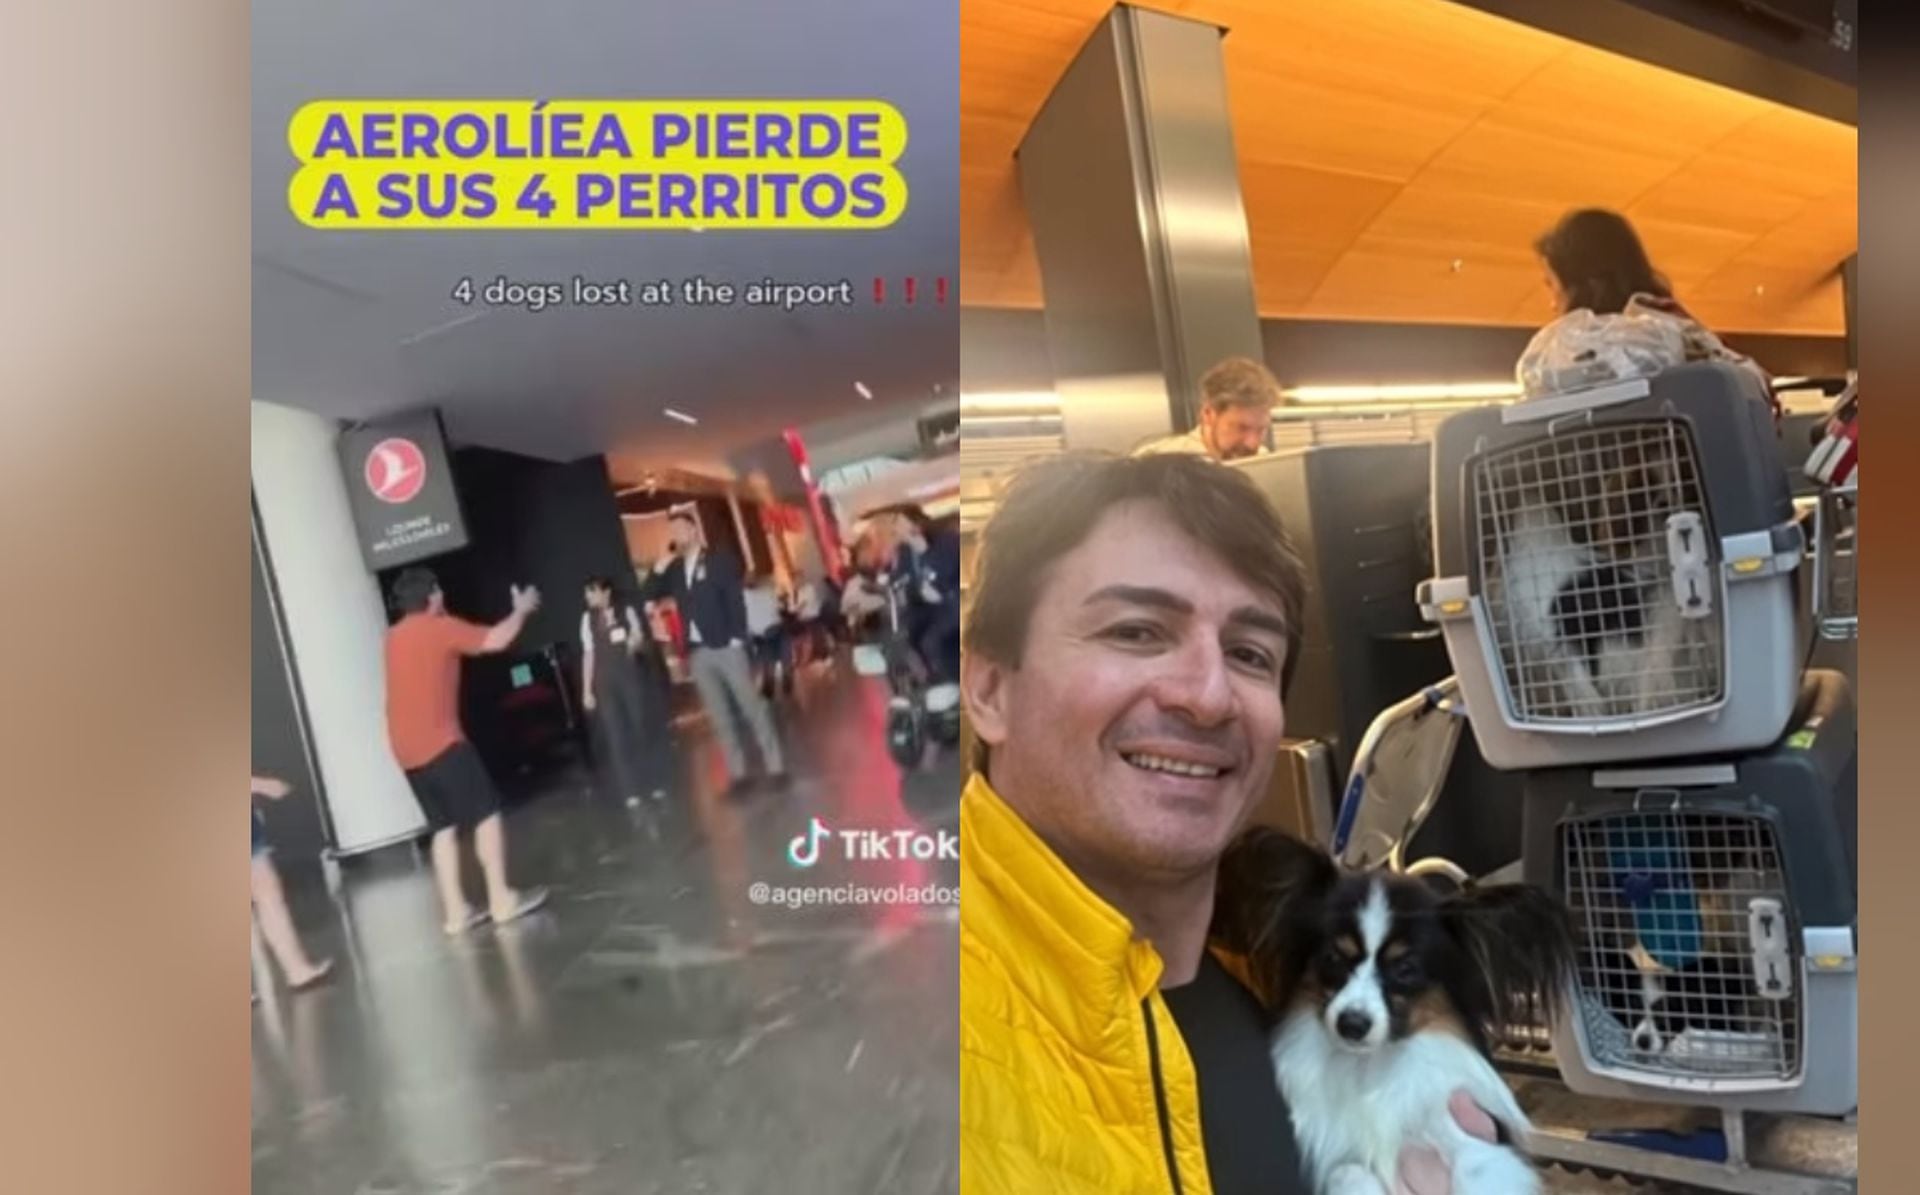 Video | a perros perdidos del hombre rompió en llanto en aeropuerto de Turquía